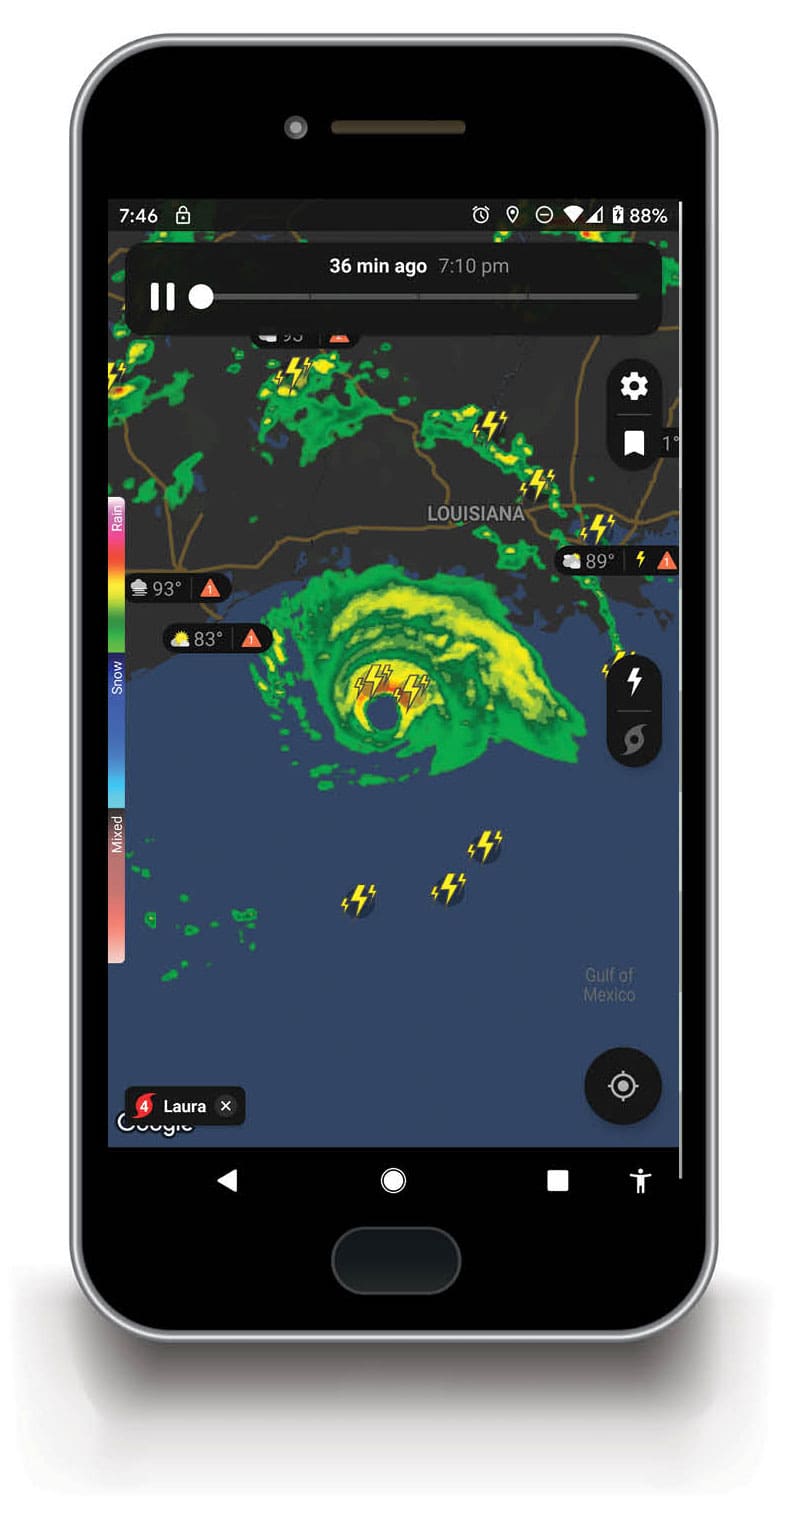 Radar weather data from the Clime app (climeradar.com).